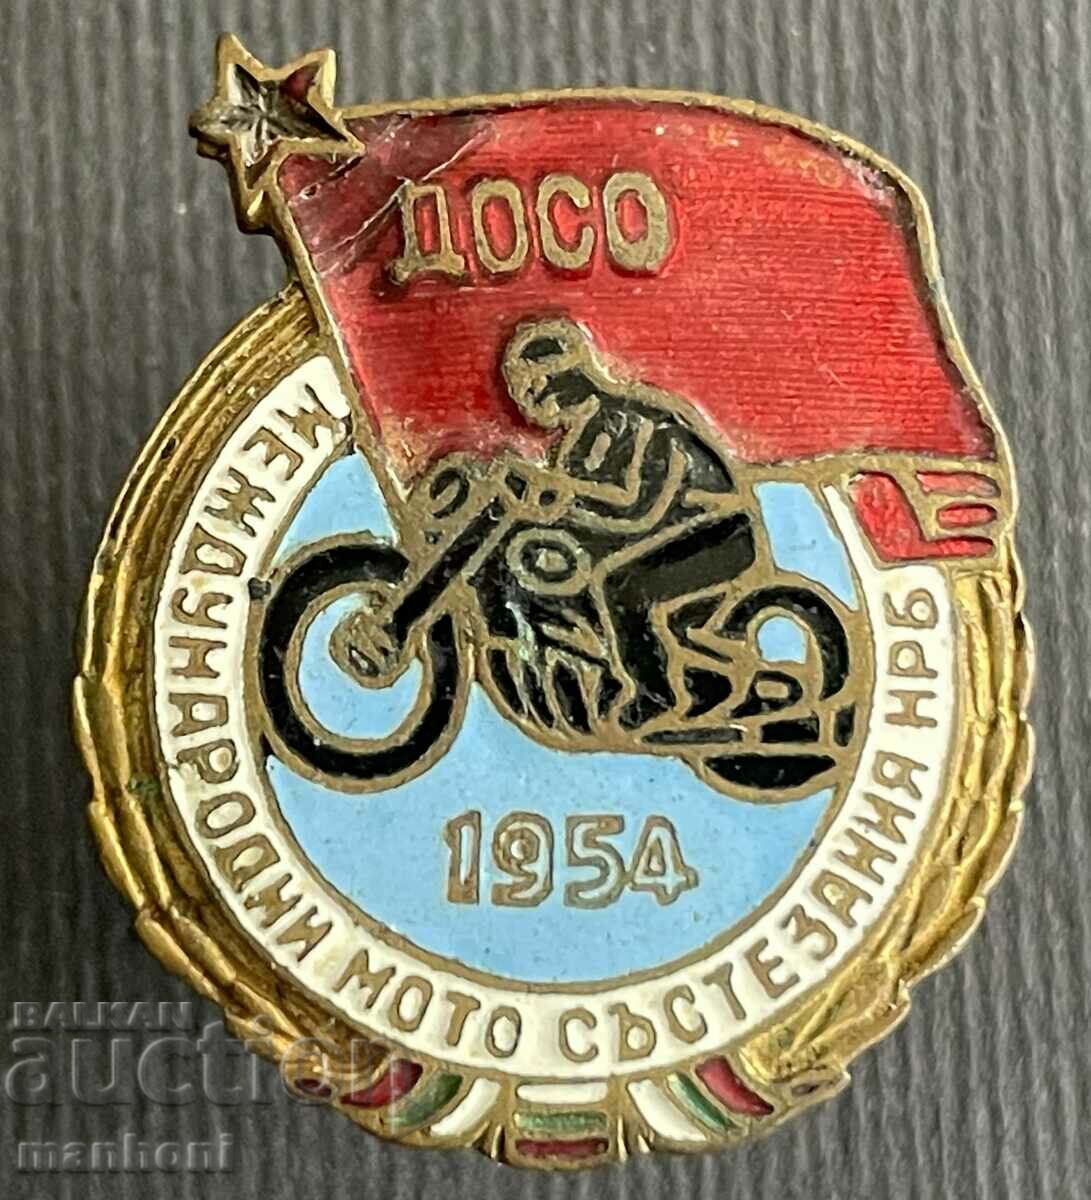 5606 Βουλγαρία Διεθνείς αγώνες μοτοσυκλέτας 1954 NRB DOSO ema